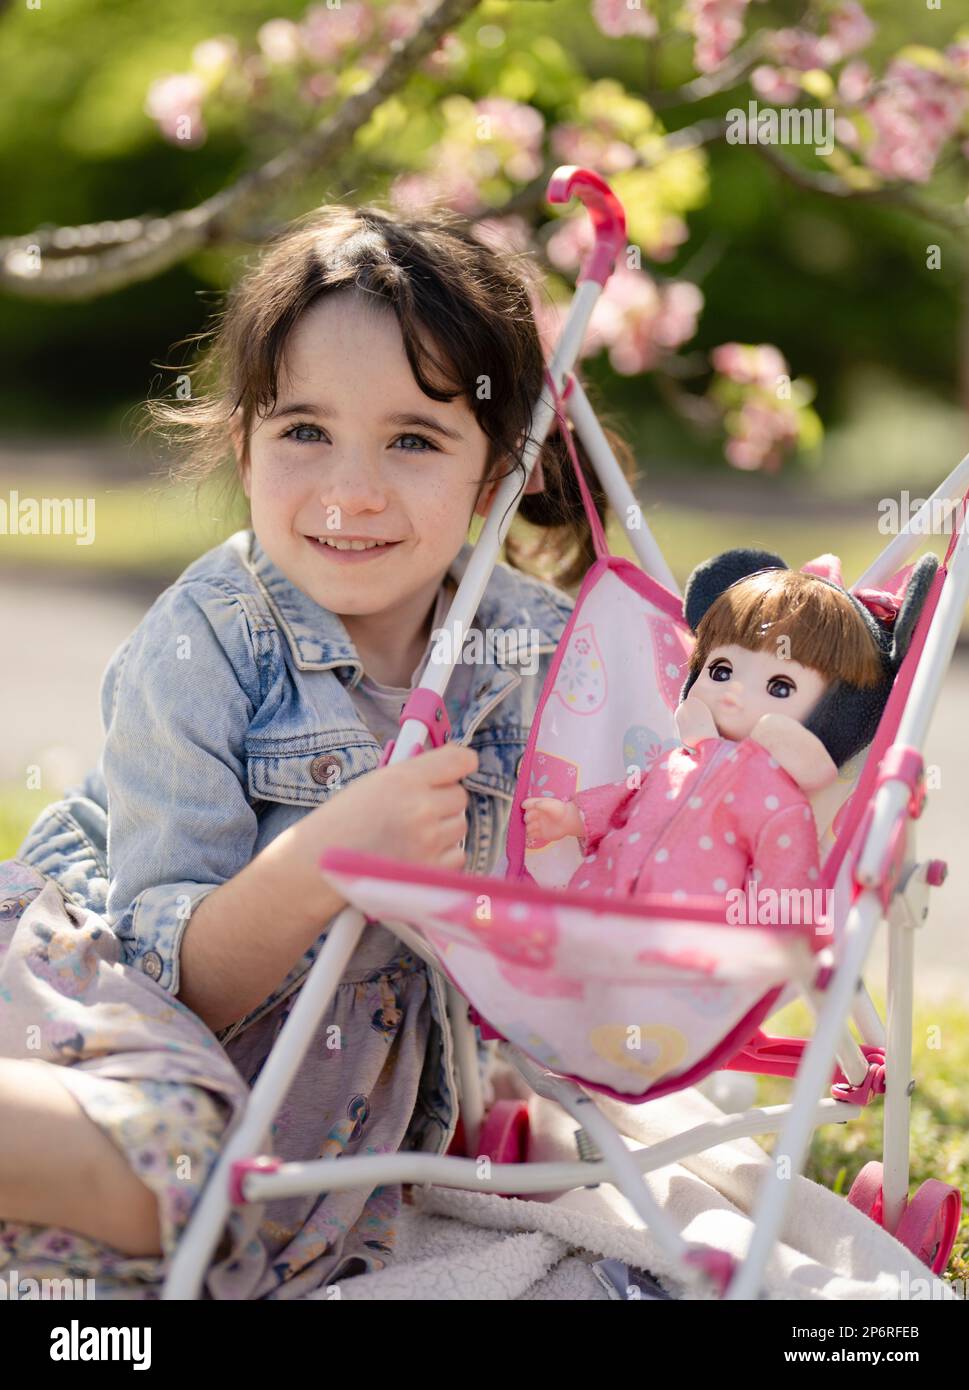 une fille de 5 ans joue avec ses poupées dans une poussette - mimycing parental Banque D'Images